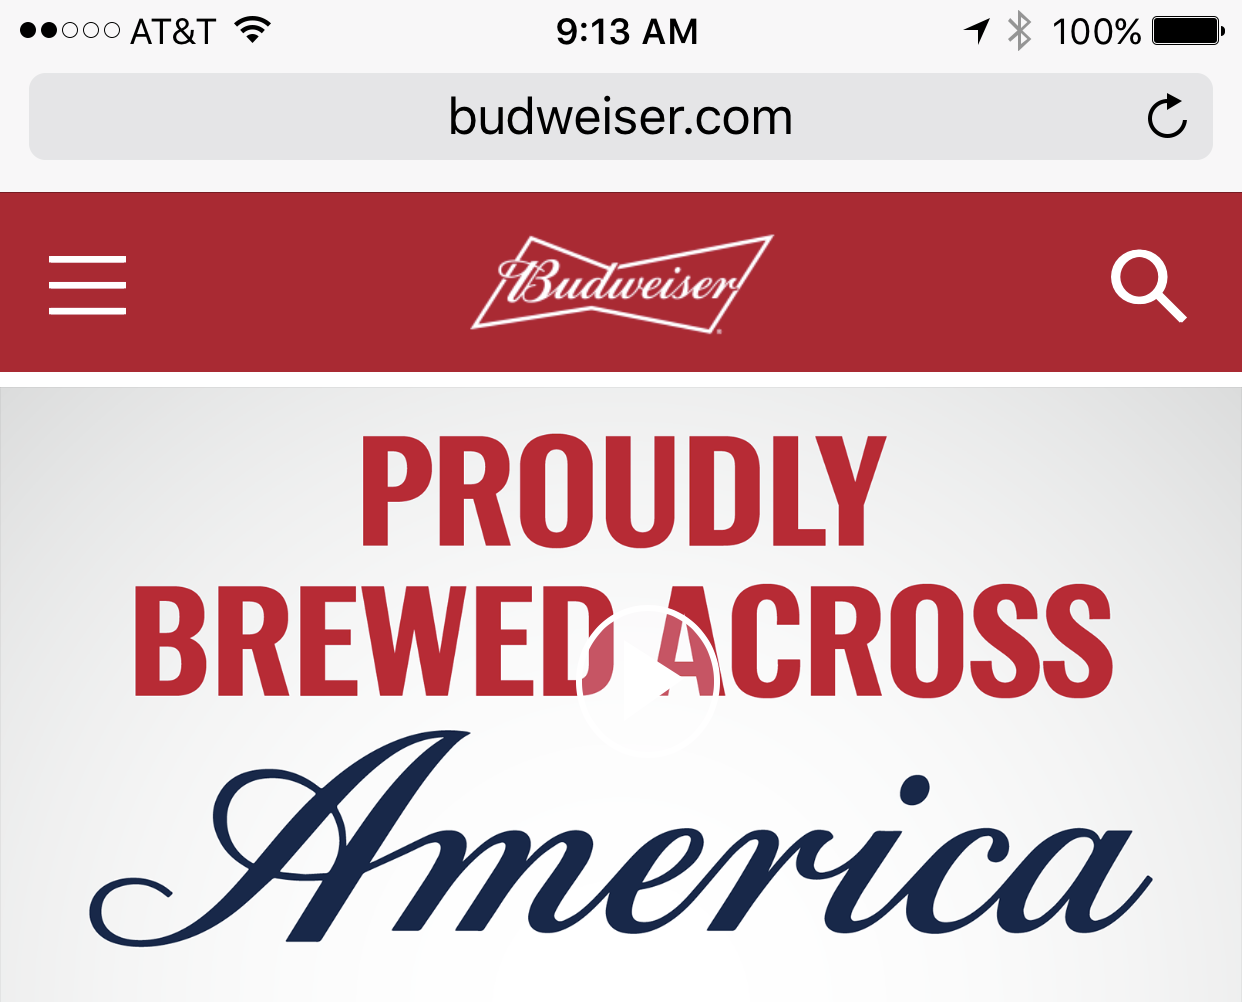 Budweiser.com